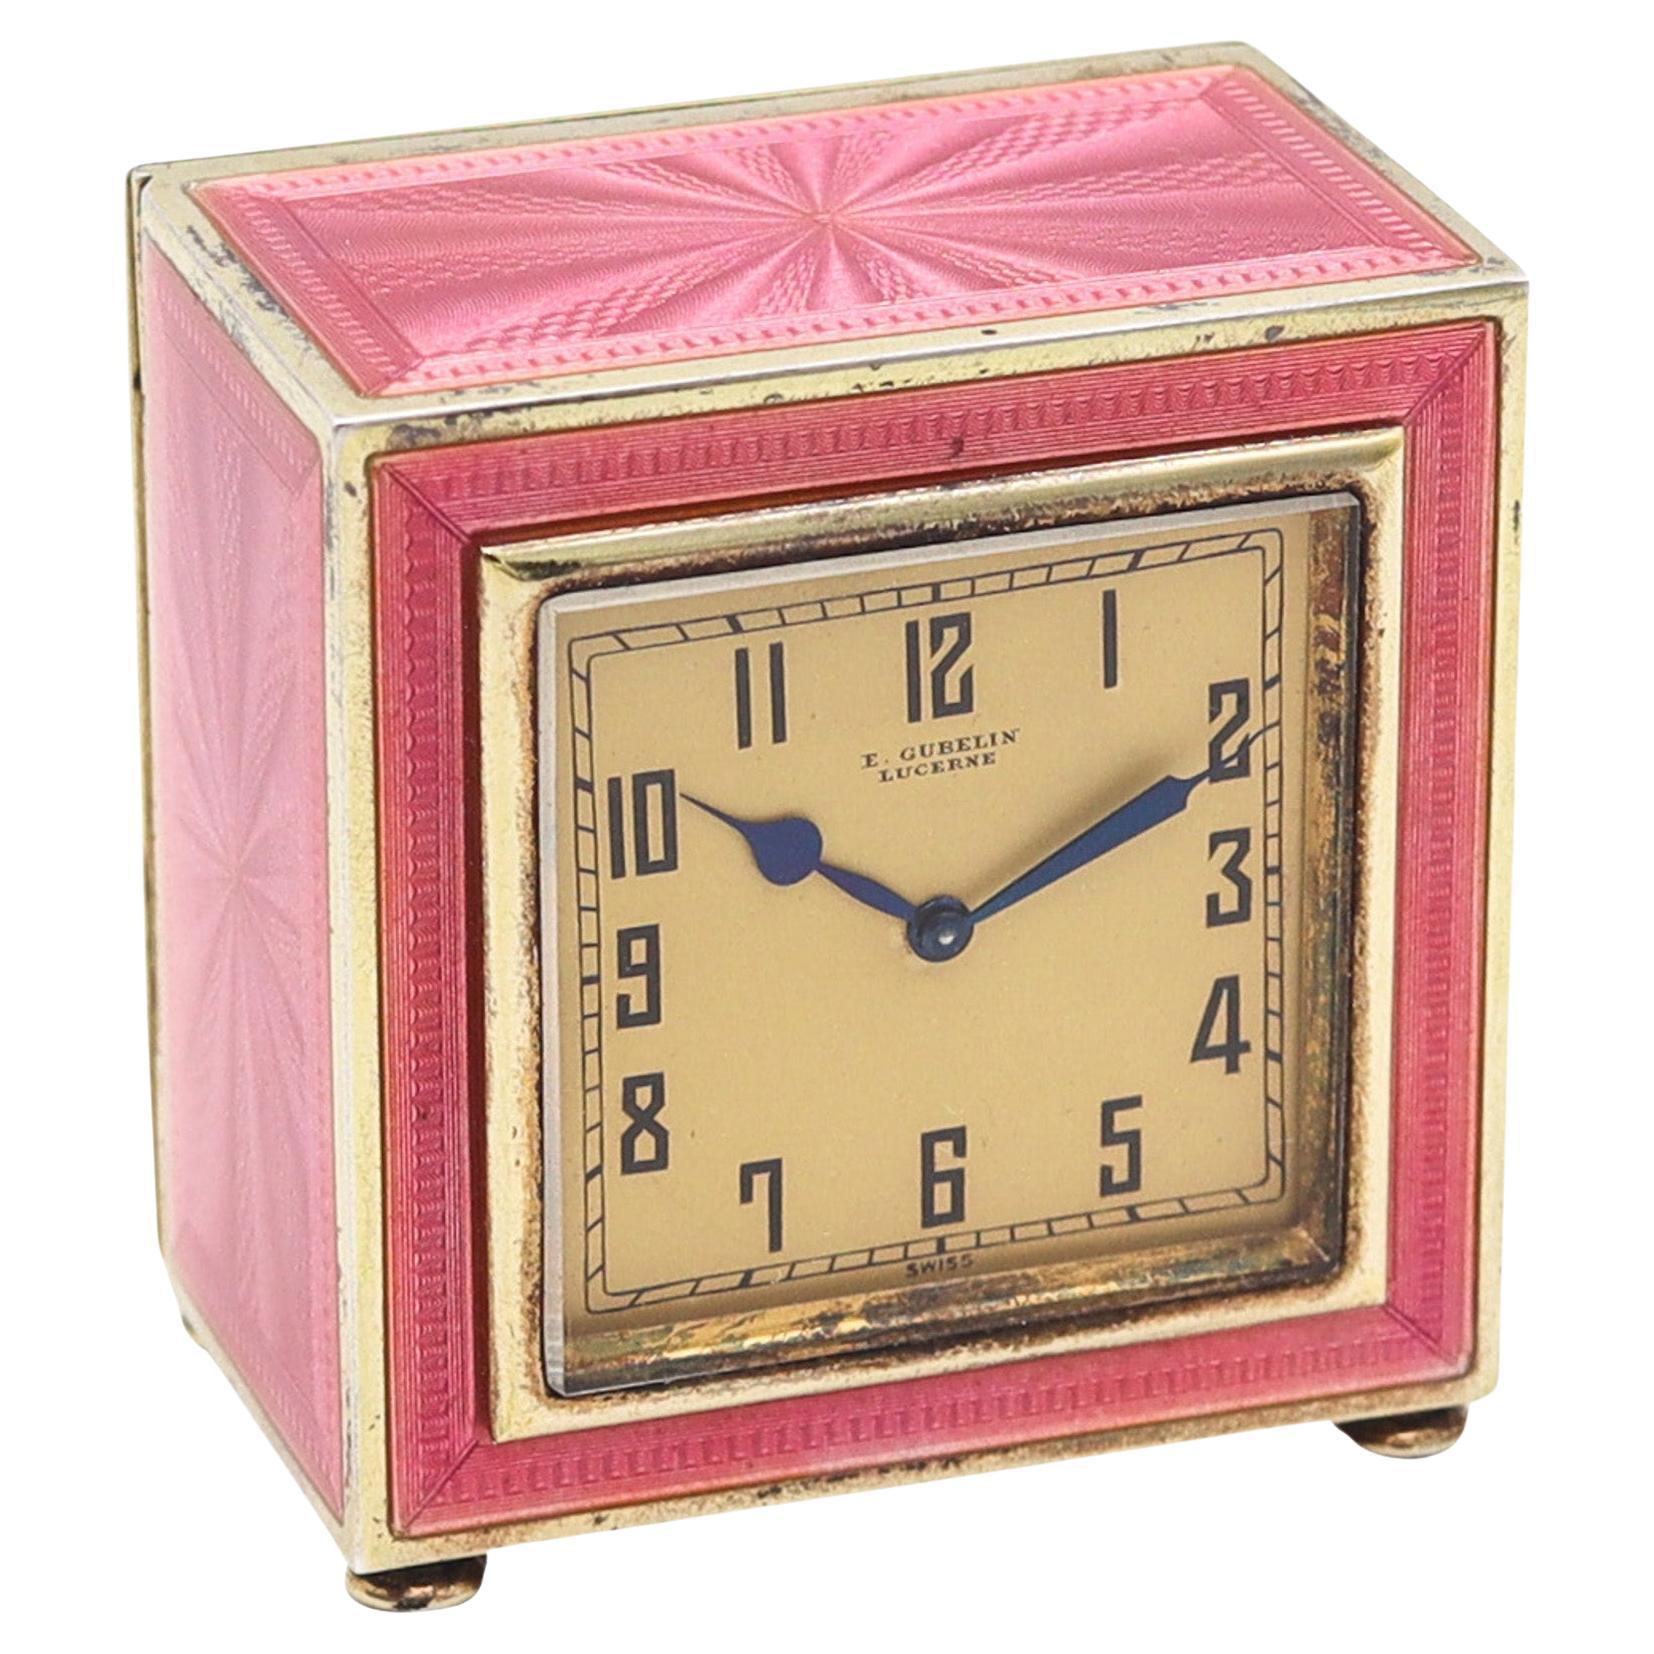 Gubelin 1925 Art Deco Guilloché Enamelled Boudoir Desk Clock In .935 Sterling